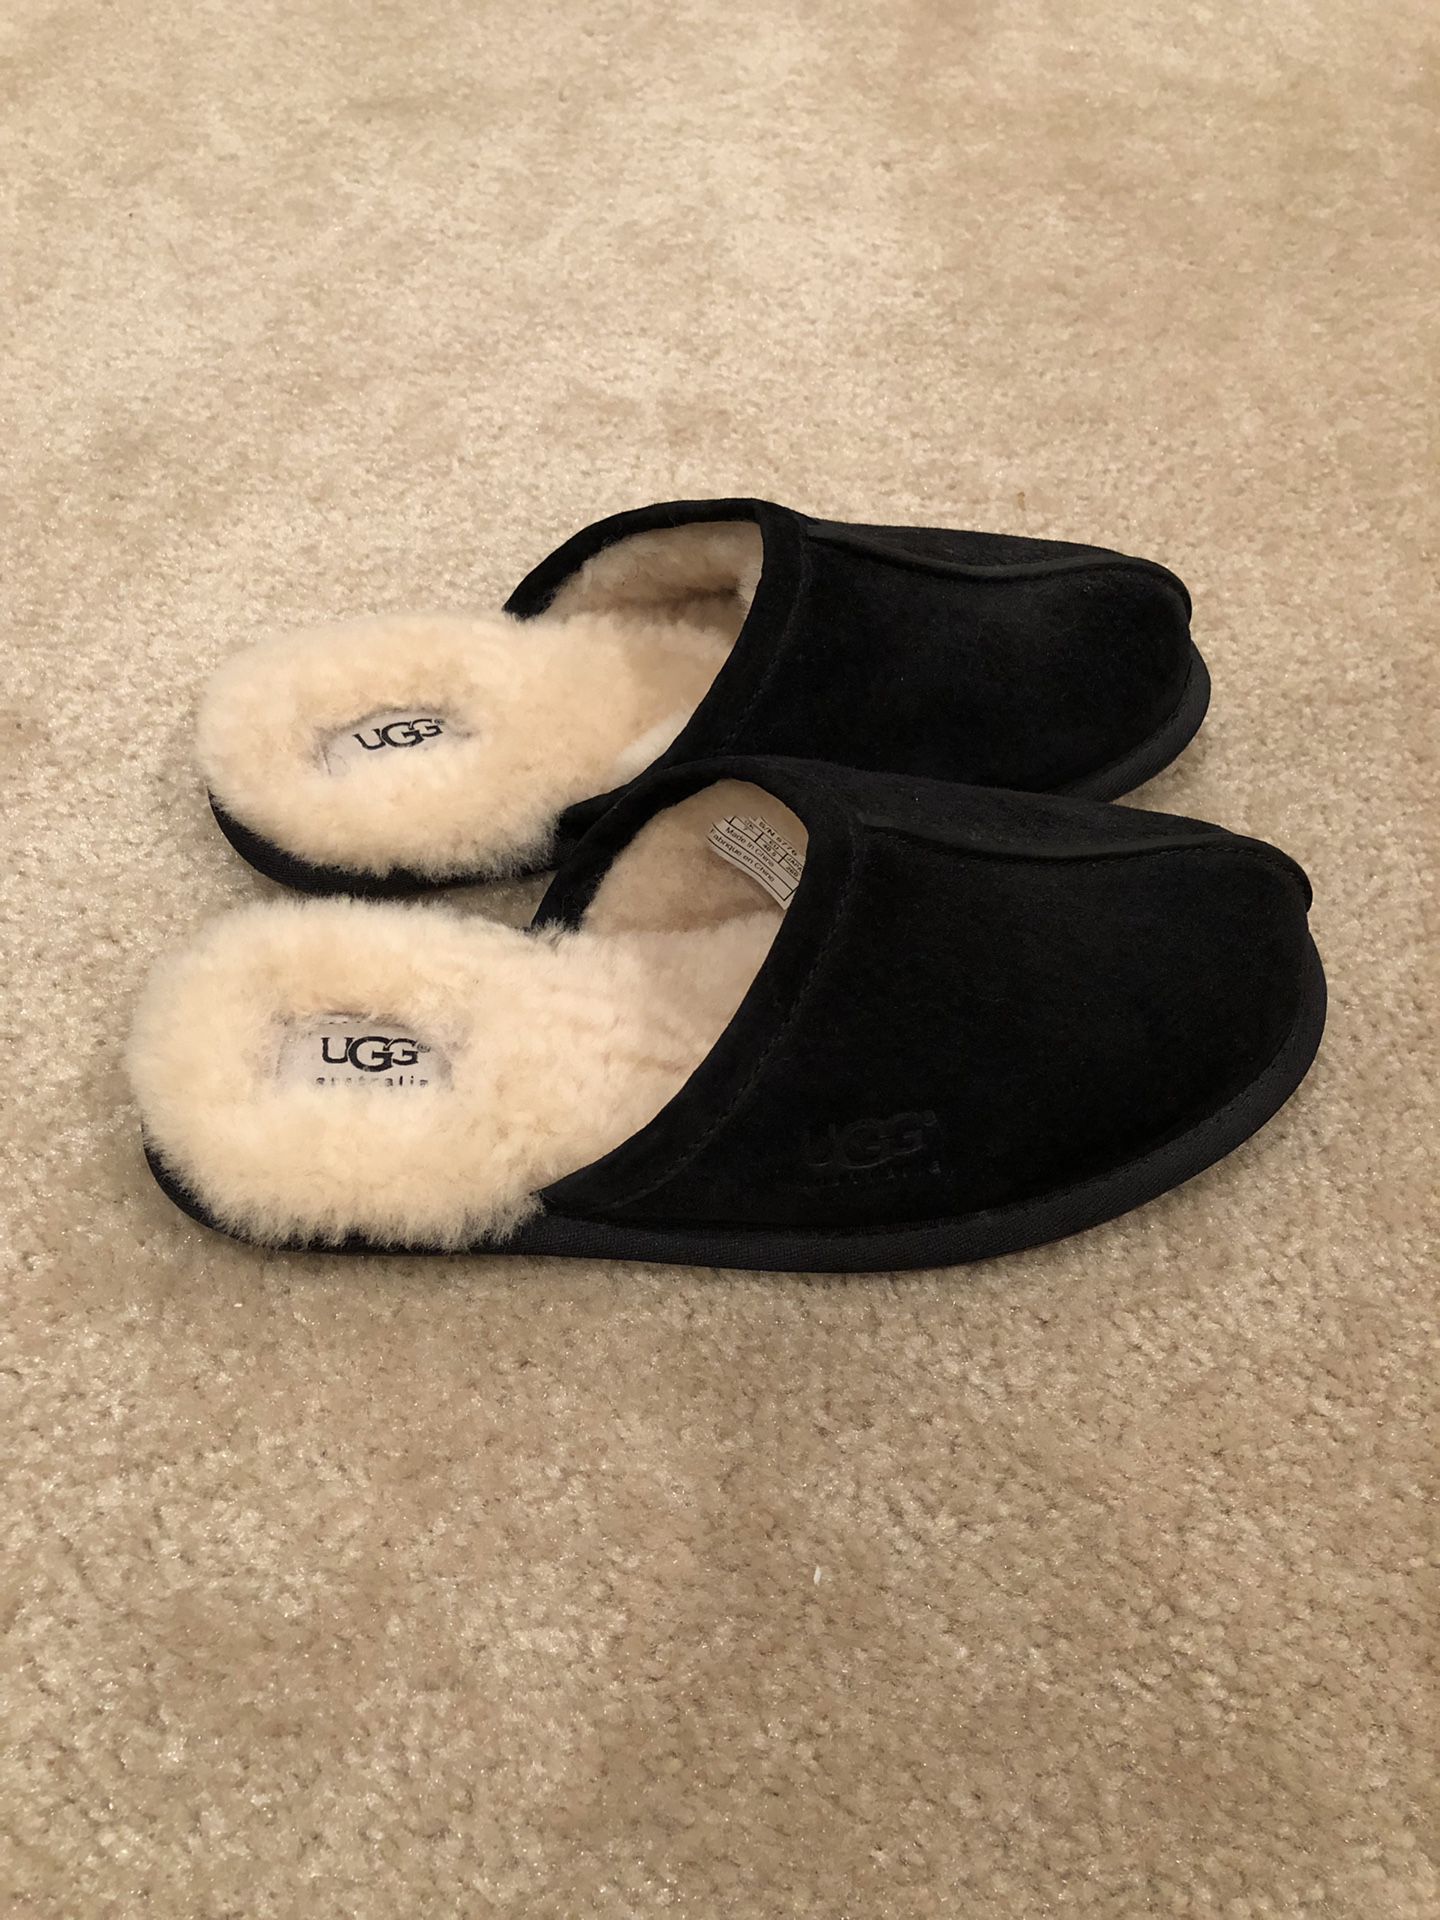 Men’s UGG slipper - size 8